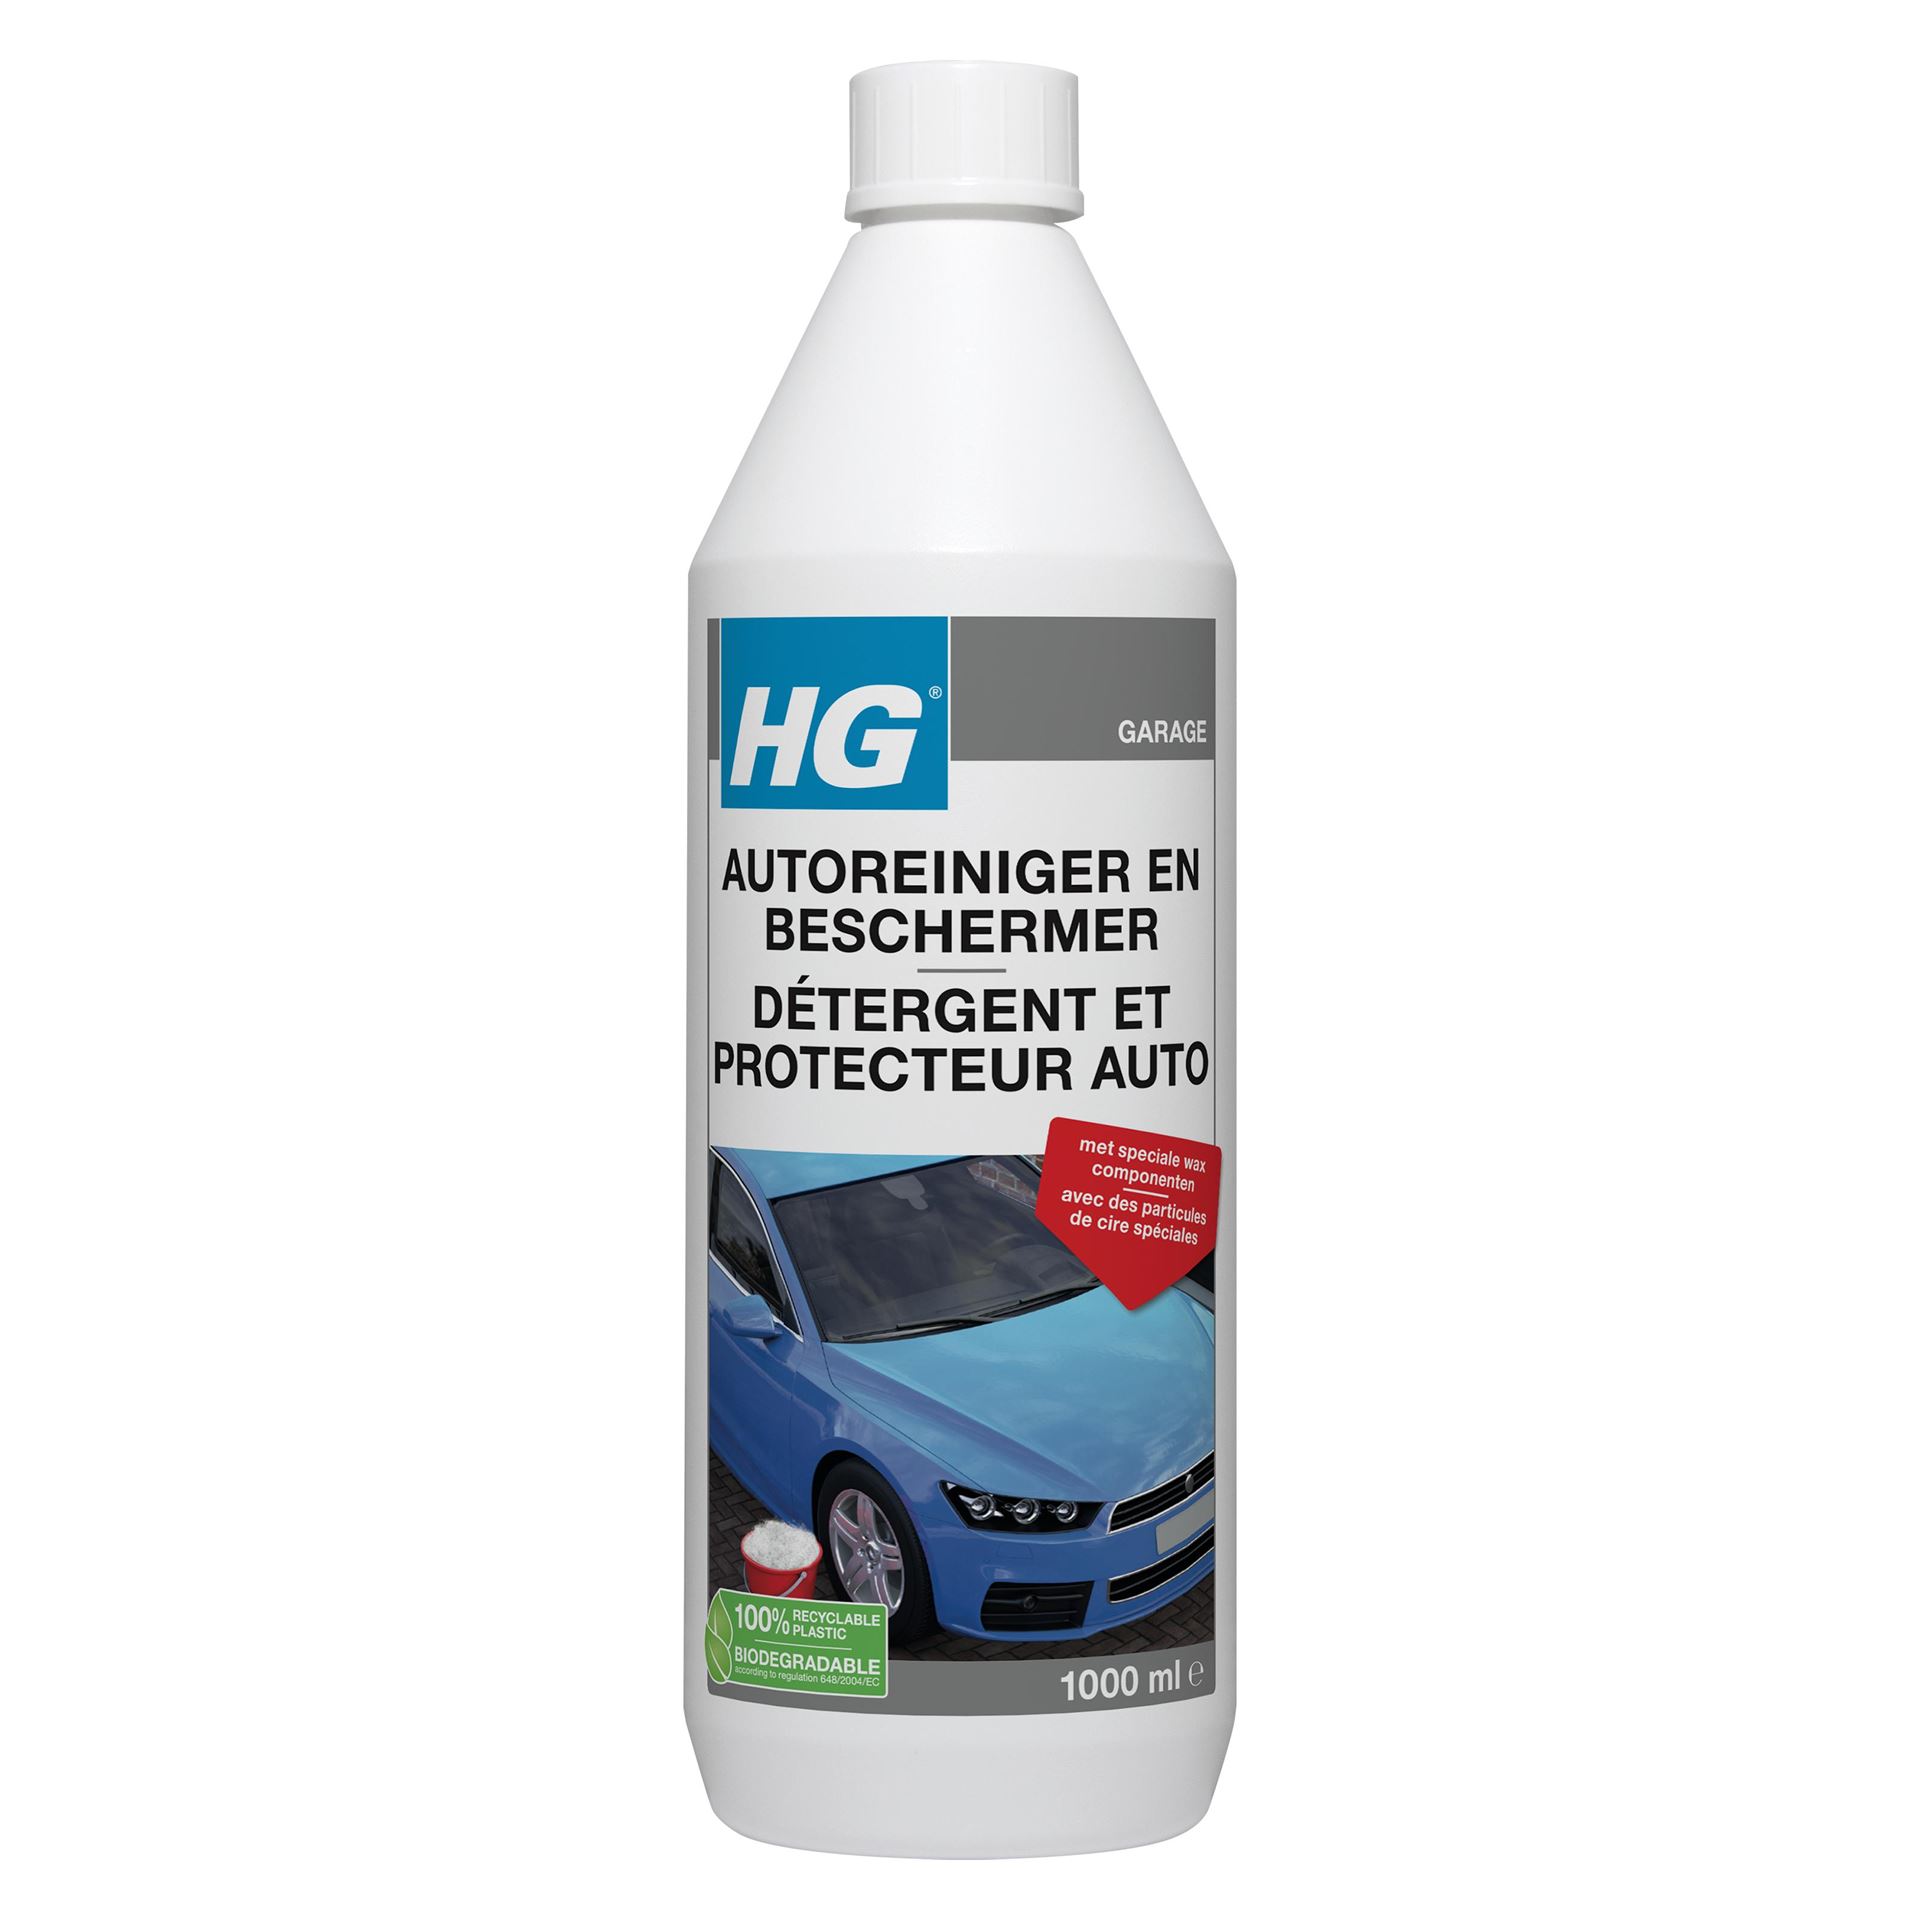 HG-car-wax-shampoo-1L